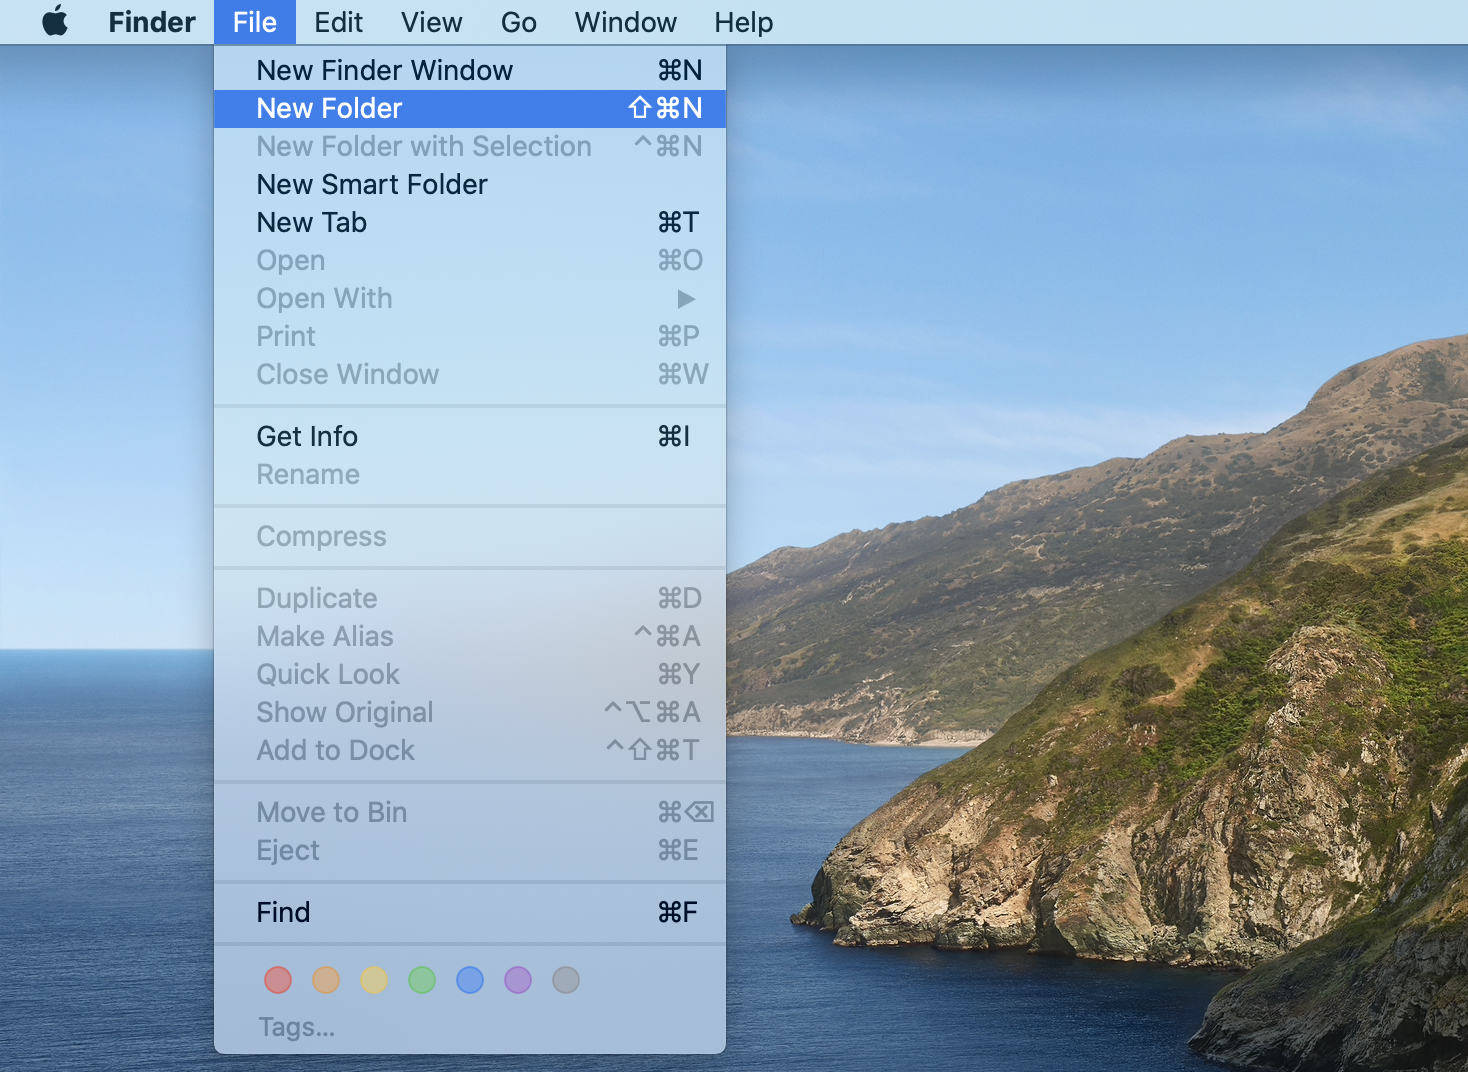 create a folder on mac desktop